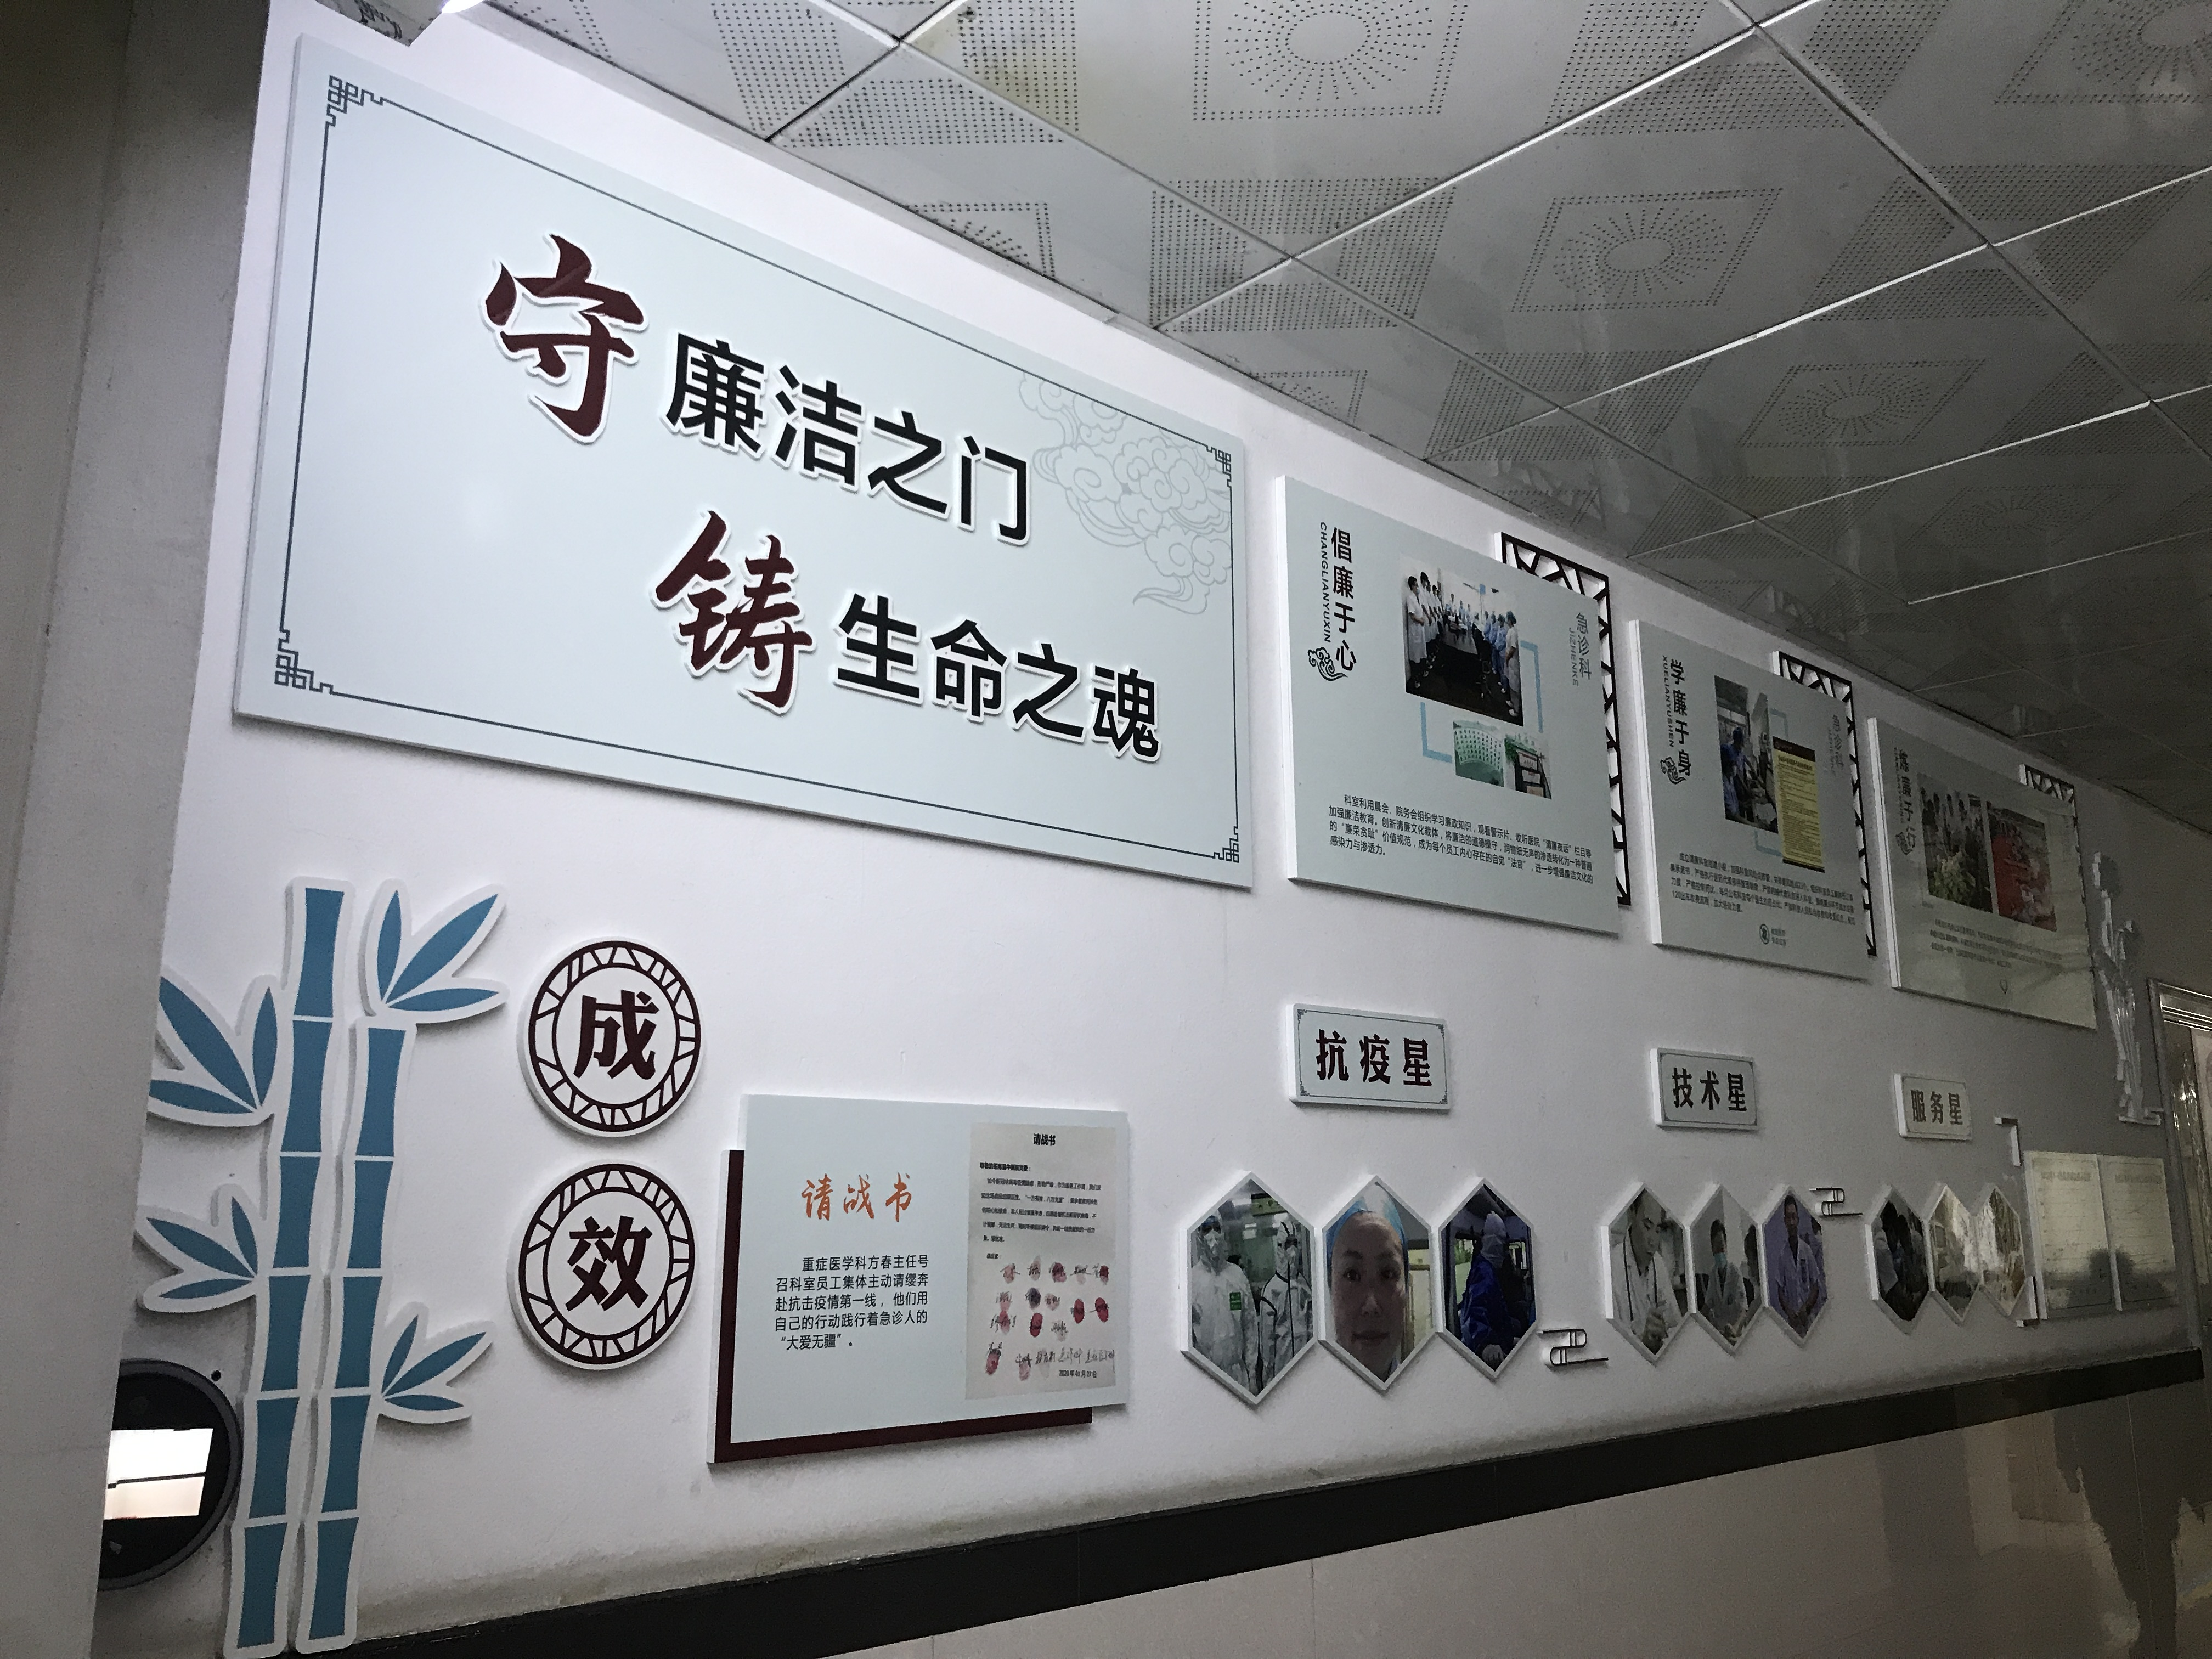 苍南县中医院打造「先锋远志大医当归」清廉品牌